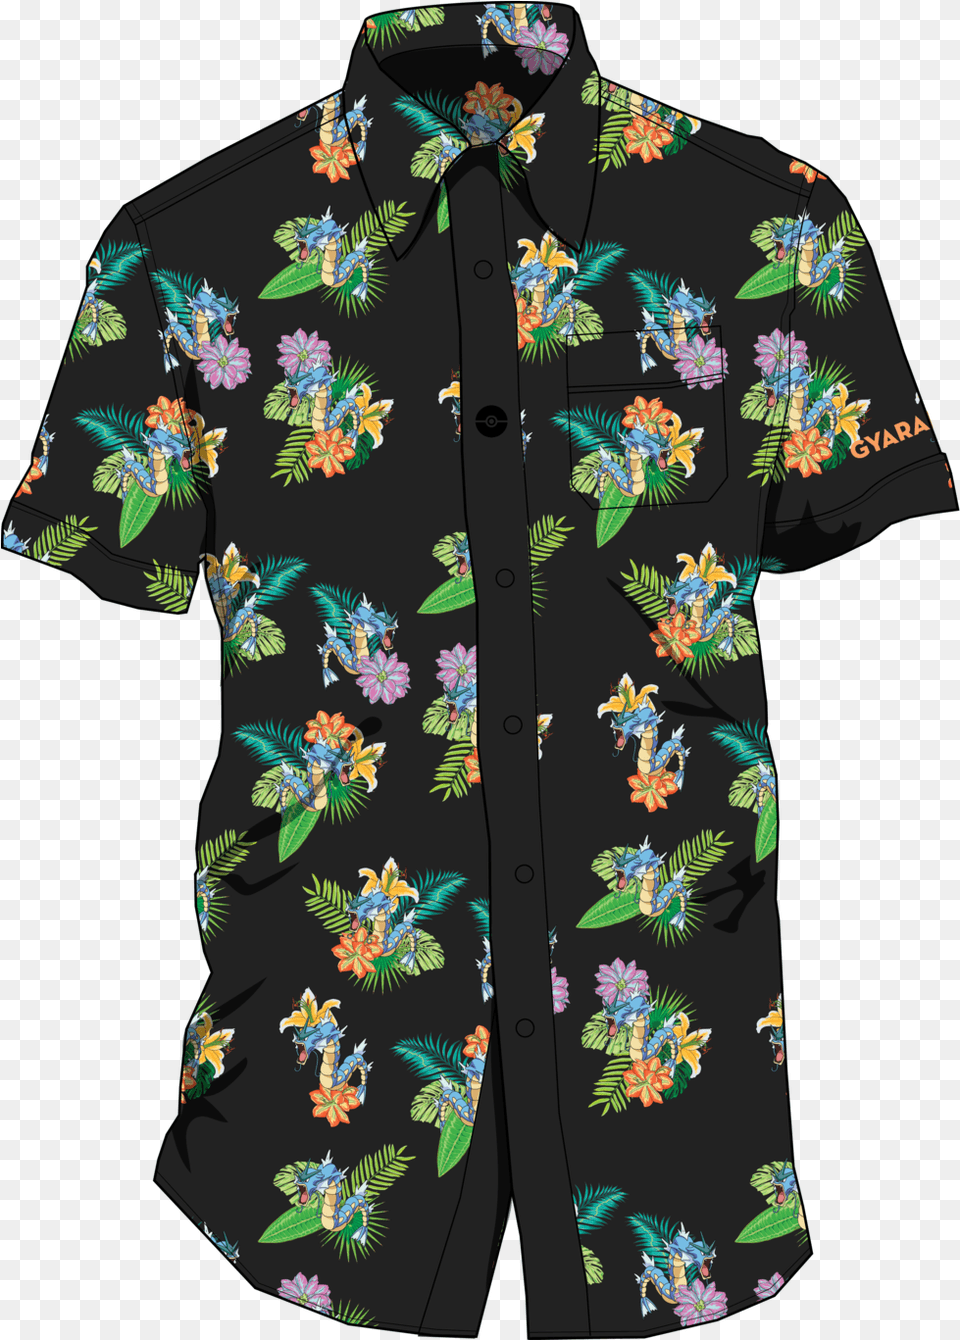 Gyarados Polo Shirt, Clothing, Pattern, Beachwear, Person Png Image